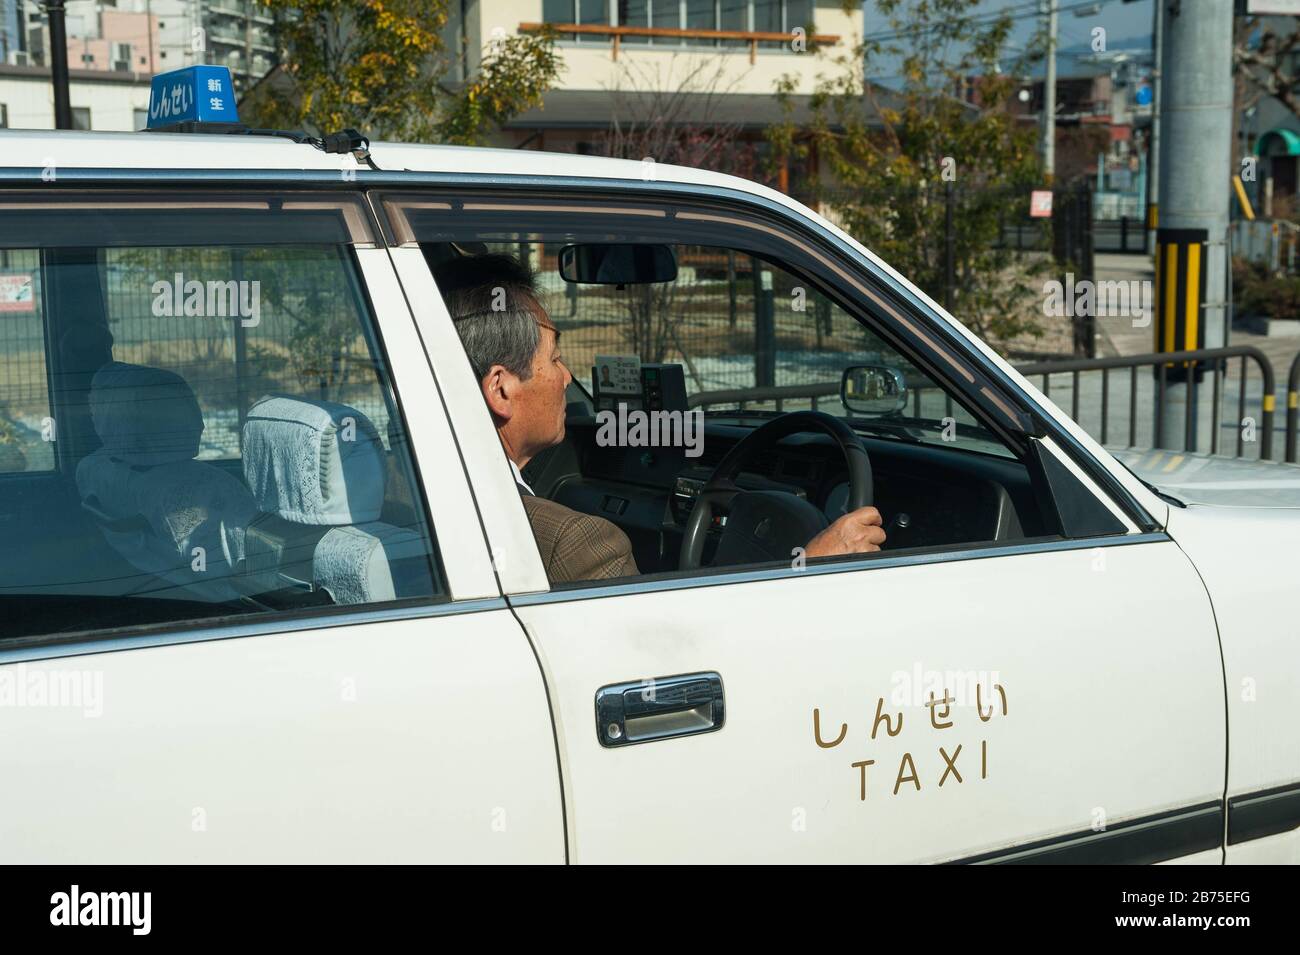 23.12.2017, Kyoto, Japon, Asie - un chauffeur de taxi dirige son taxi vide dans les rues de Kyoto. [traduction automatique] Banque D'Images